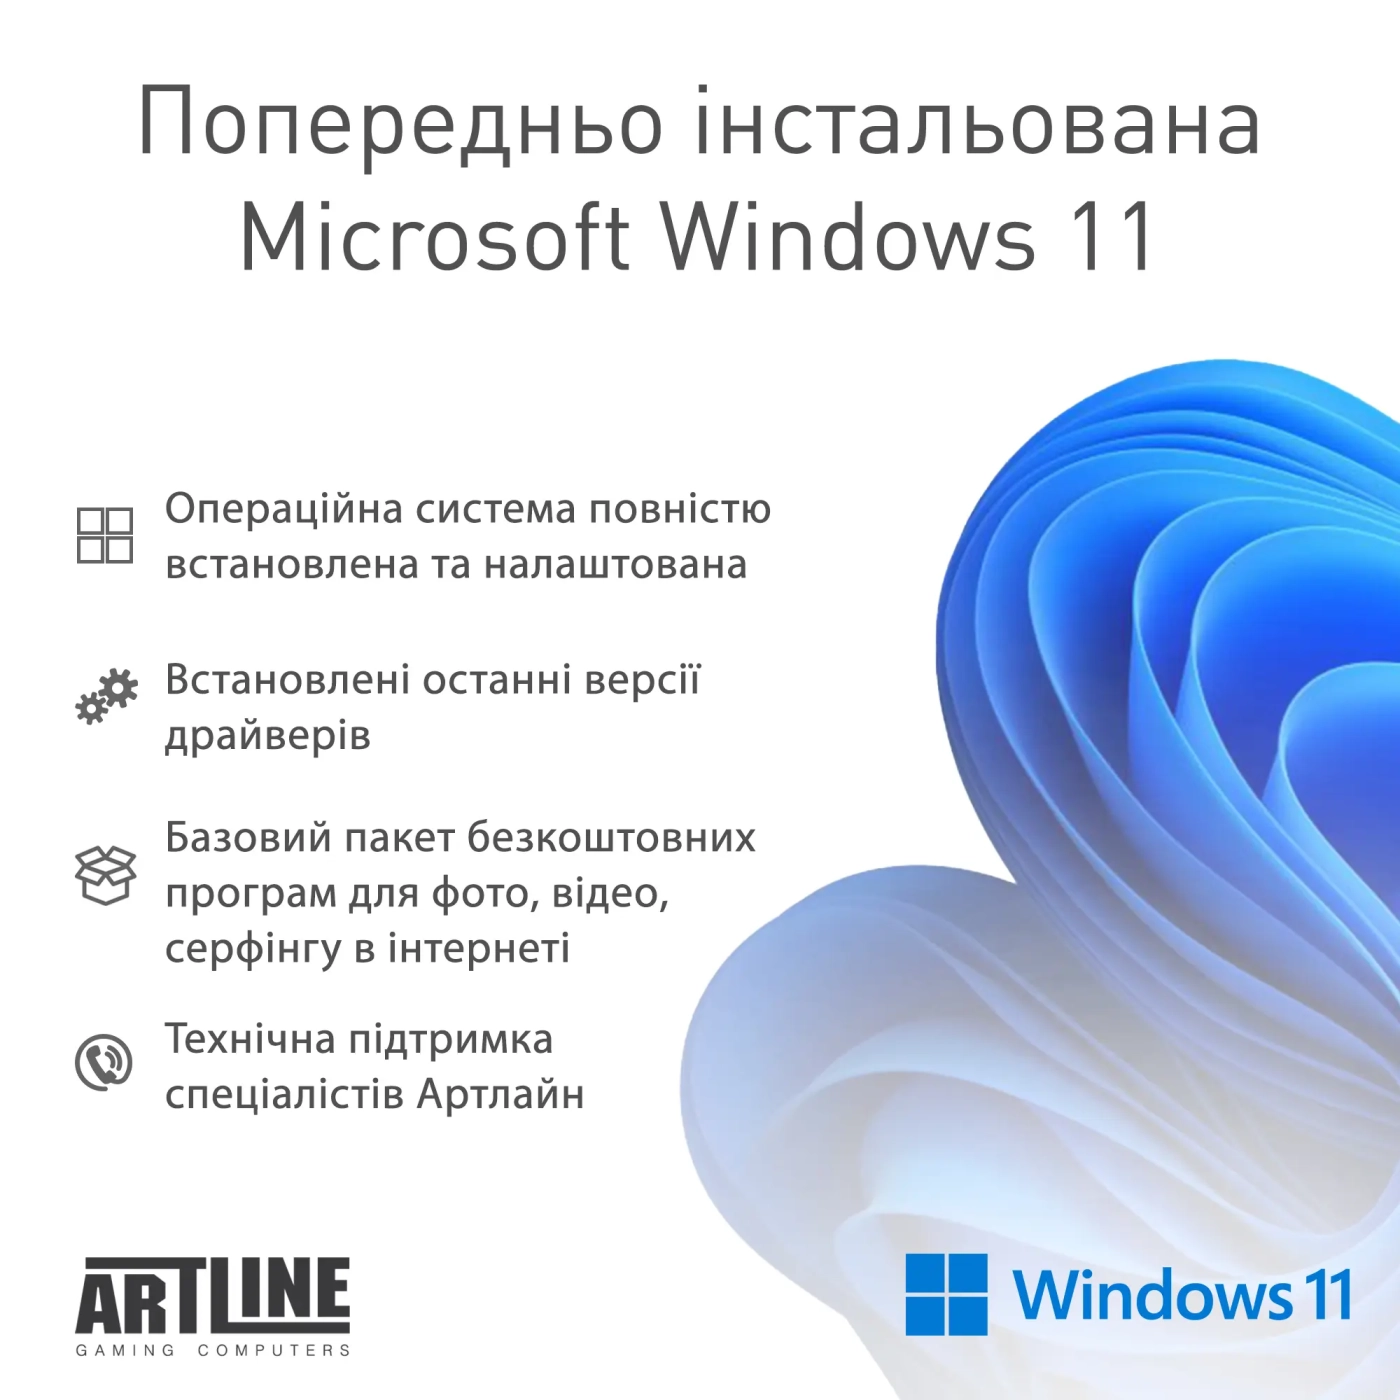 Купить Компьютер ARTLINE Gaming HGWRTS Windows 11 Home (HGWRTSv76Win) - фото 11